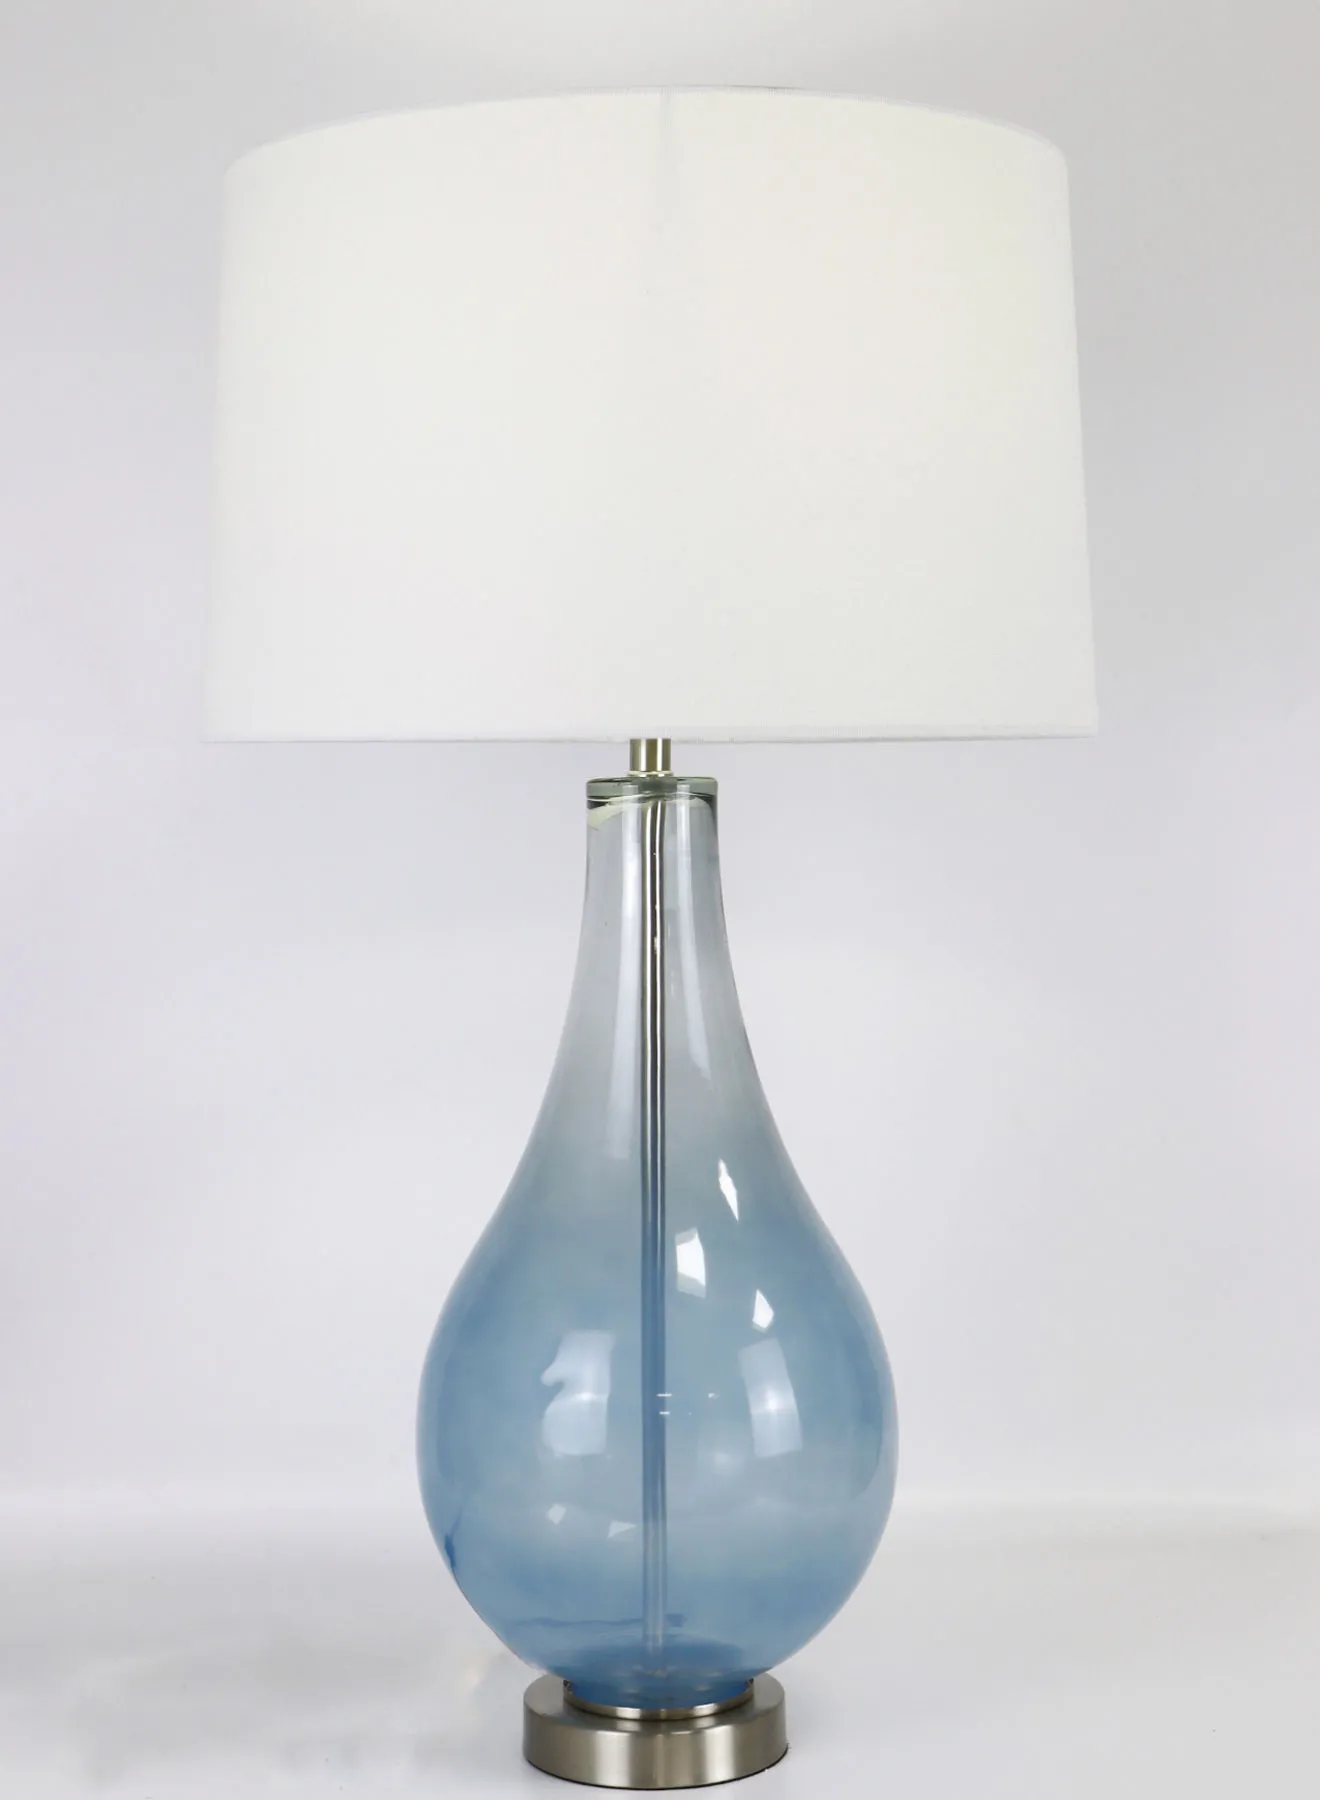 مصباح طاولة زجاجي بتصميم عصري من التبديل مادة فاخرة فريدة من نوعها لمنزل أنيق مثالي RSN71026 أزرق / شفاف 16 × 28.2 أزرق / شفاف 16 × 28.2 بوصة